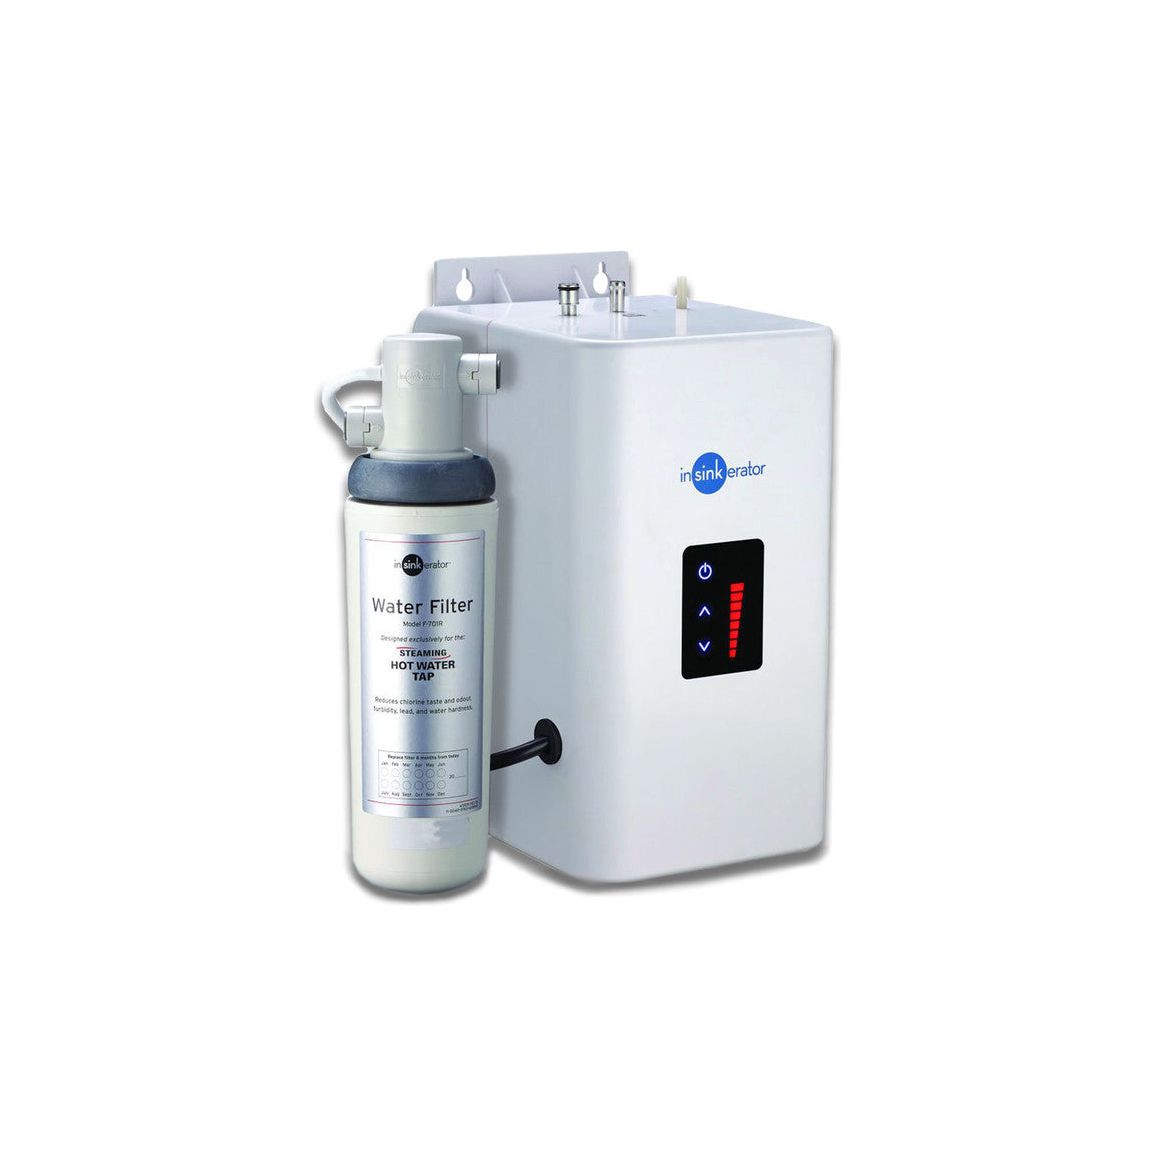 Grifo mezclador frío/calor InSinkErator HC3300, tanque Neo y filtro de agua - Acero cepillado